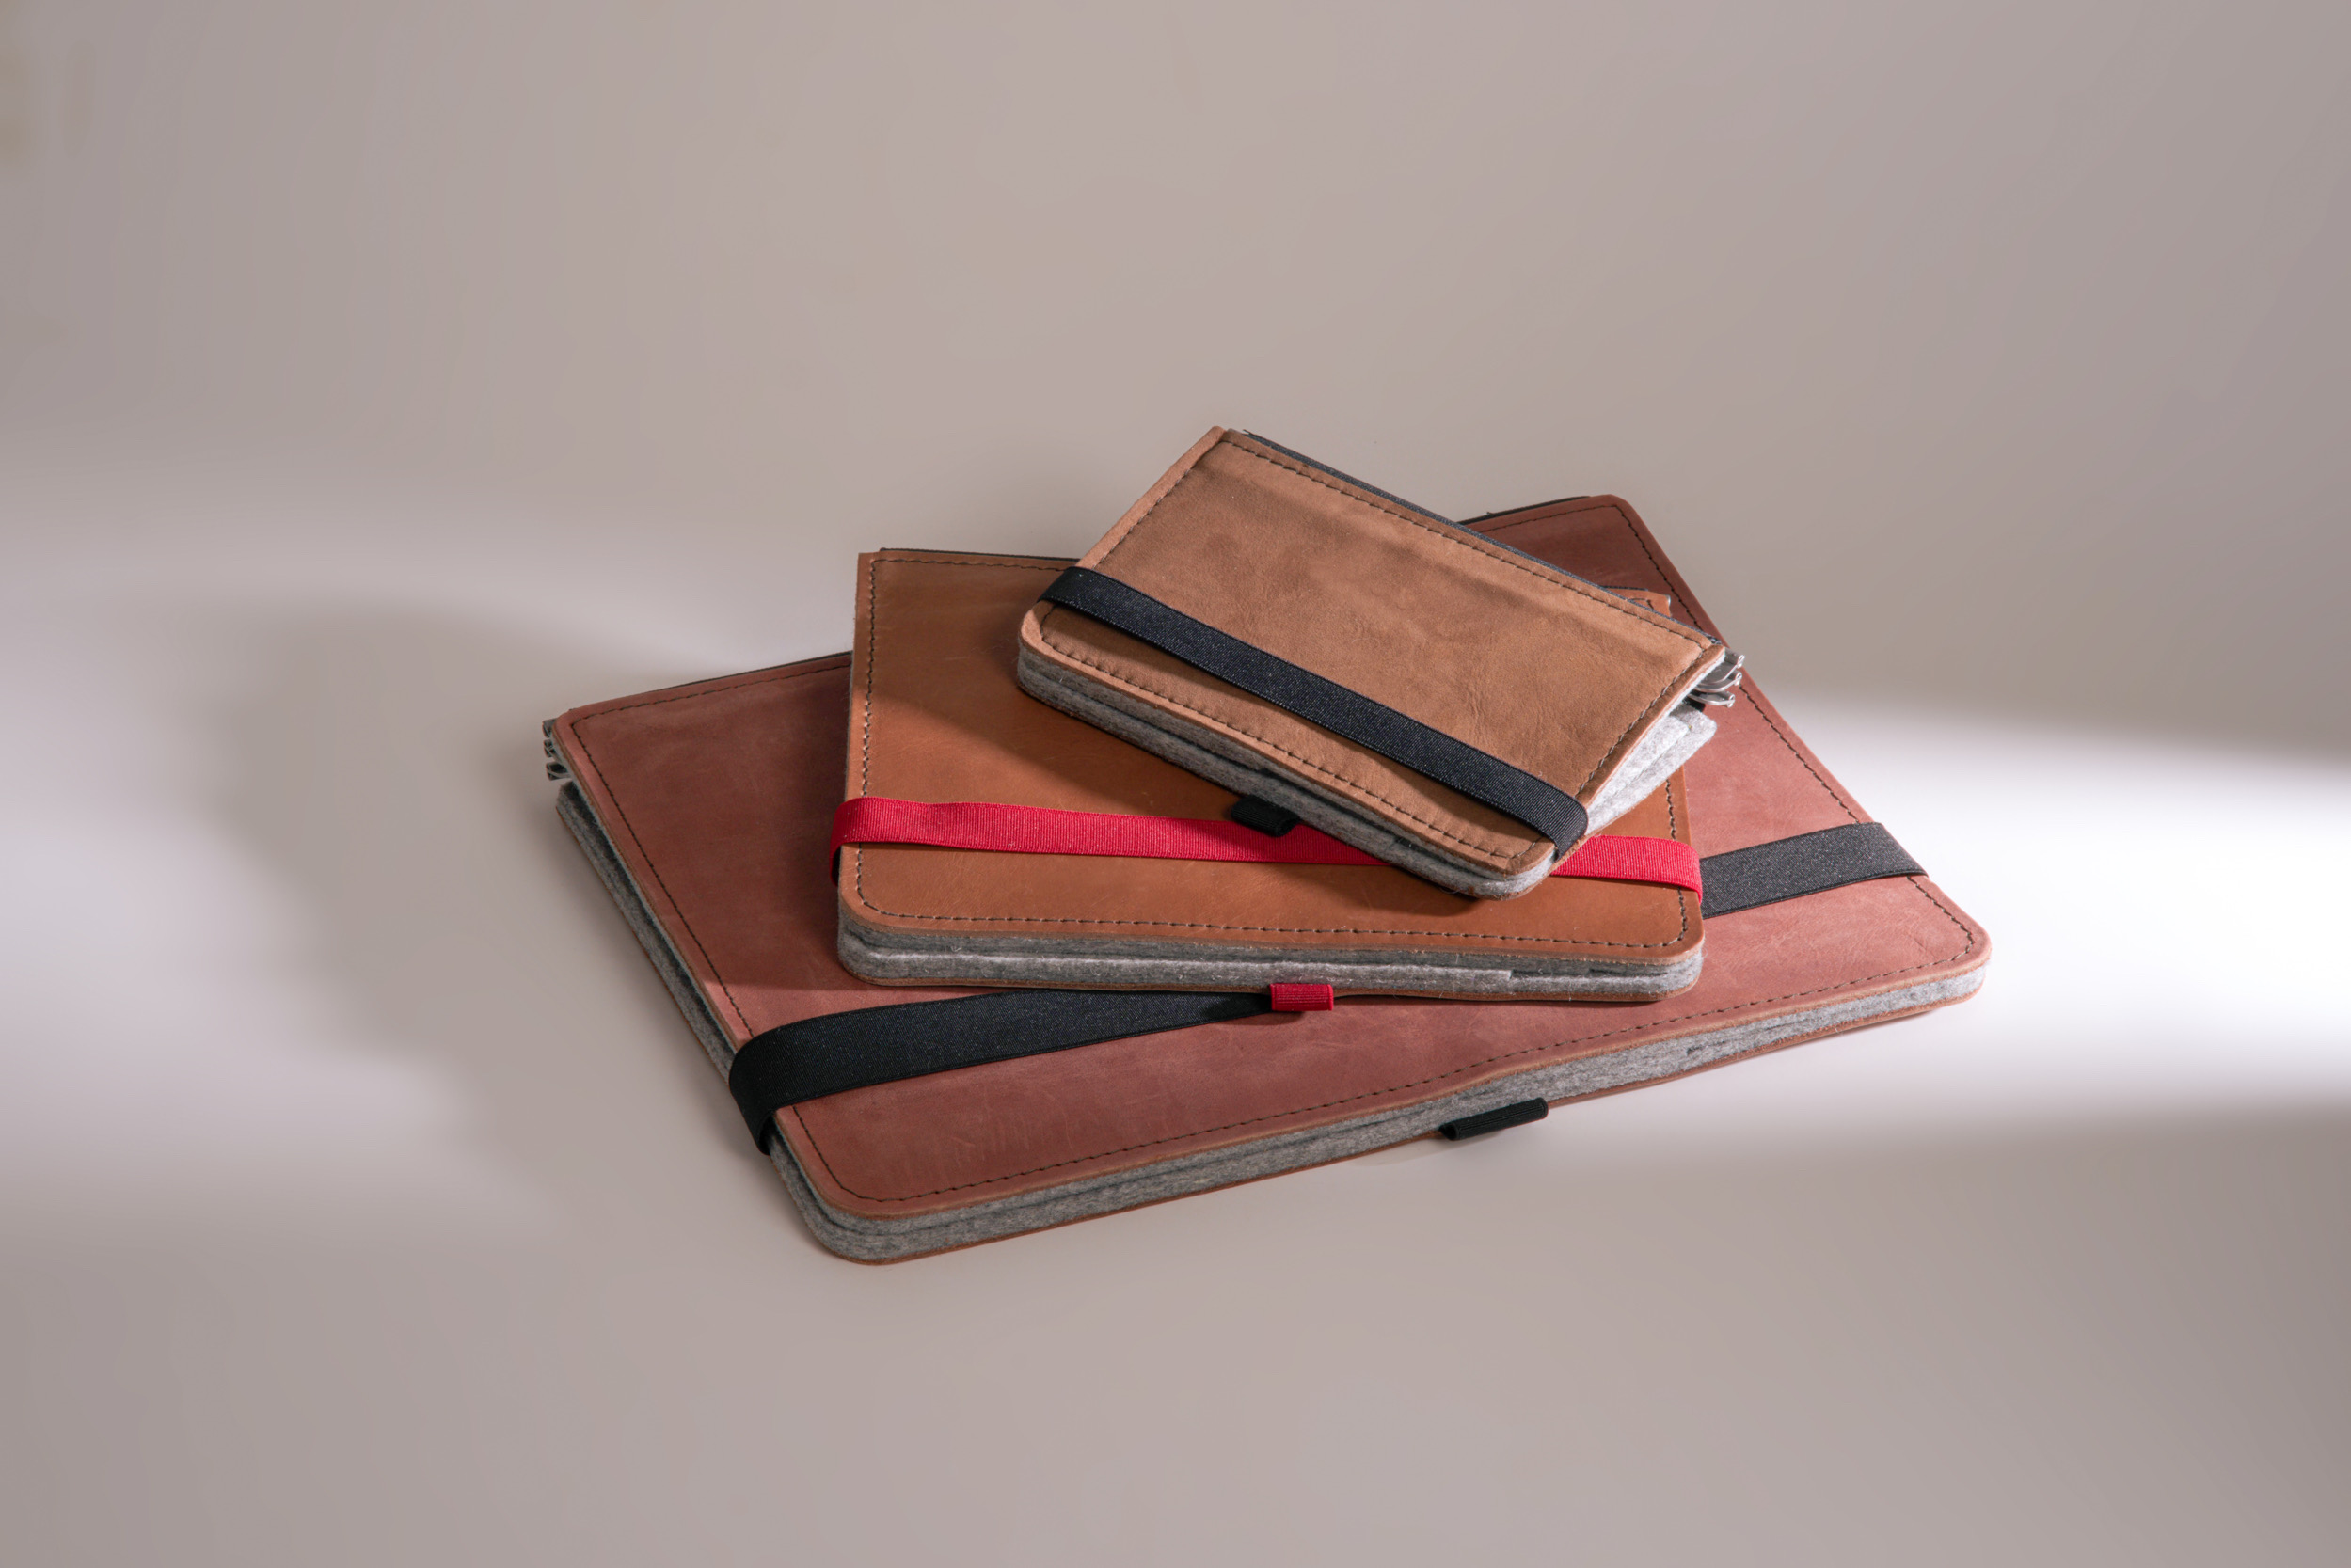 Roterfaden Taschenbegleiter BS_20 mit chromfreiem Glattleder, Merino Wollfilz und vielseitigen Innentaschen für perfekte Organisation.